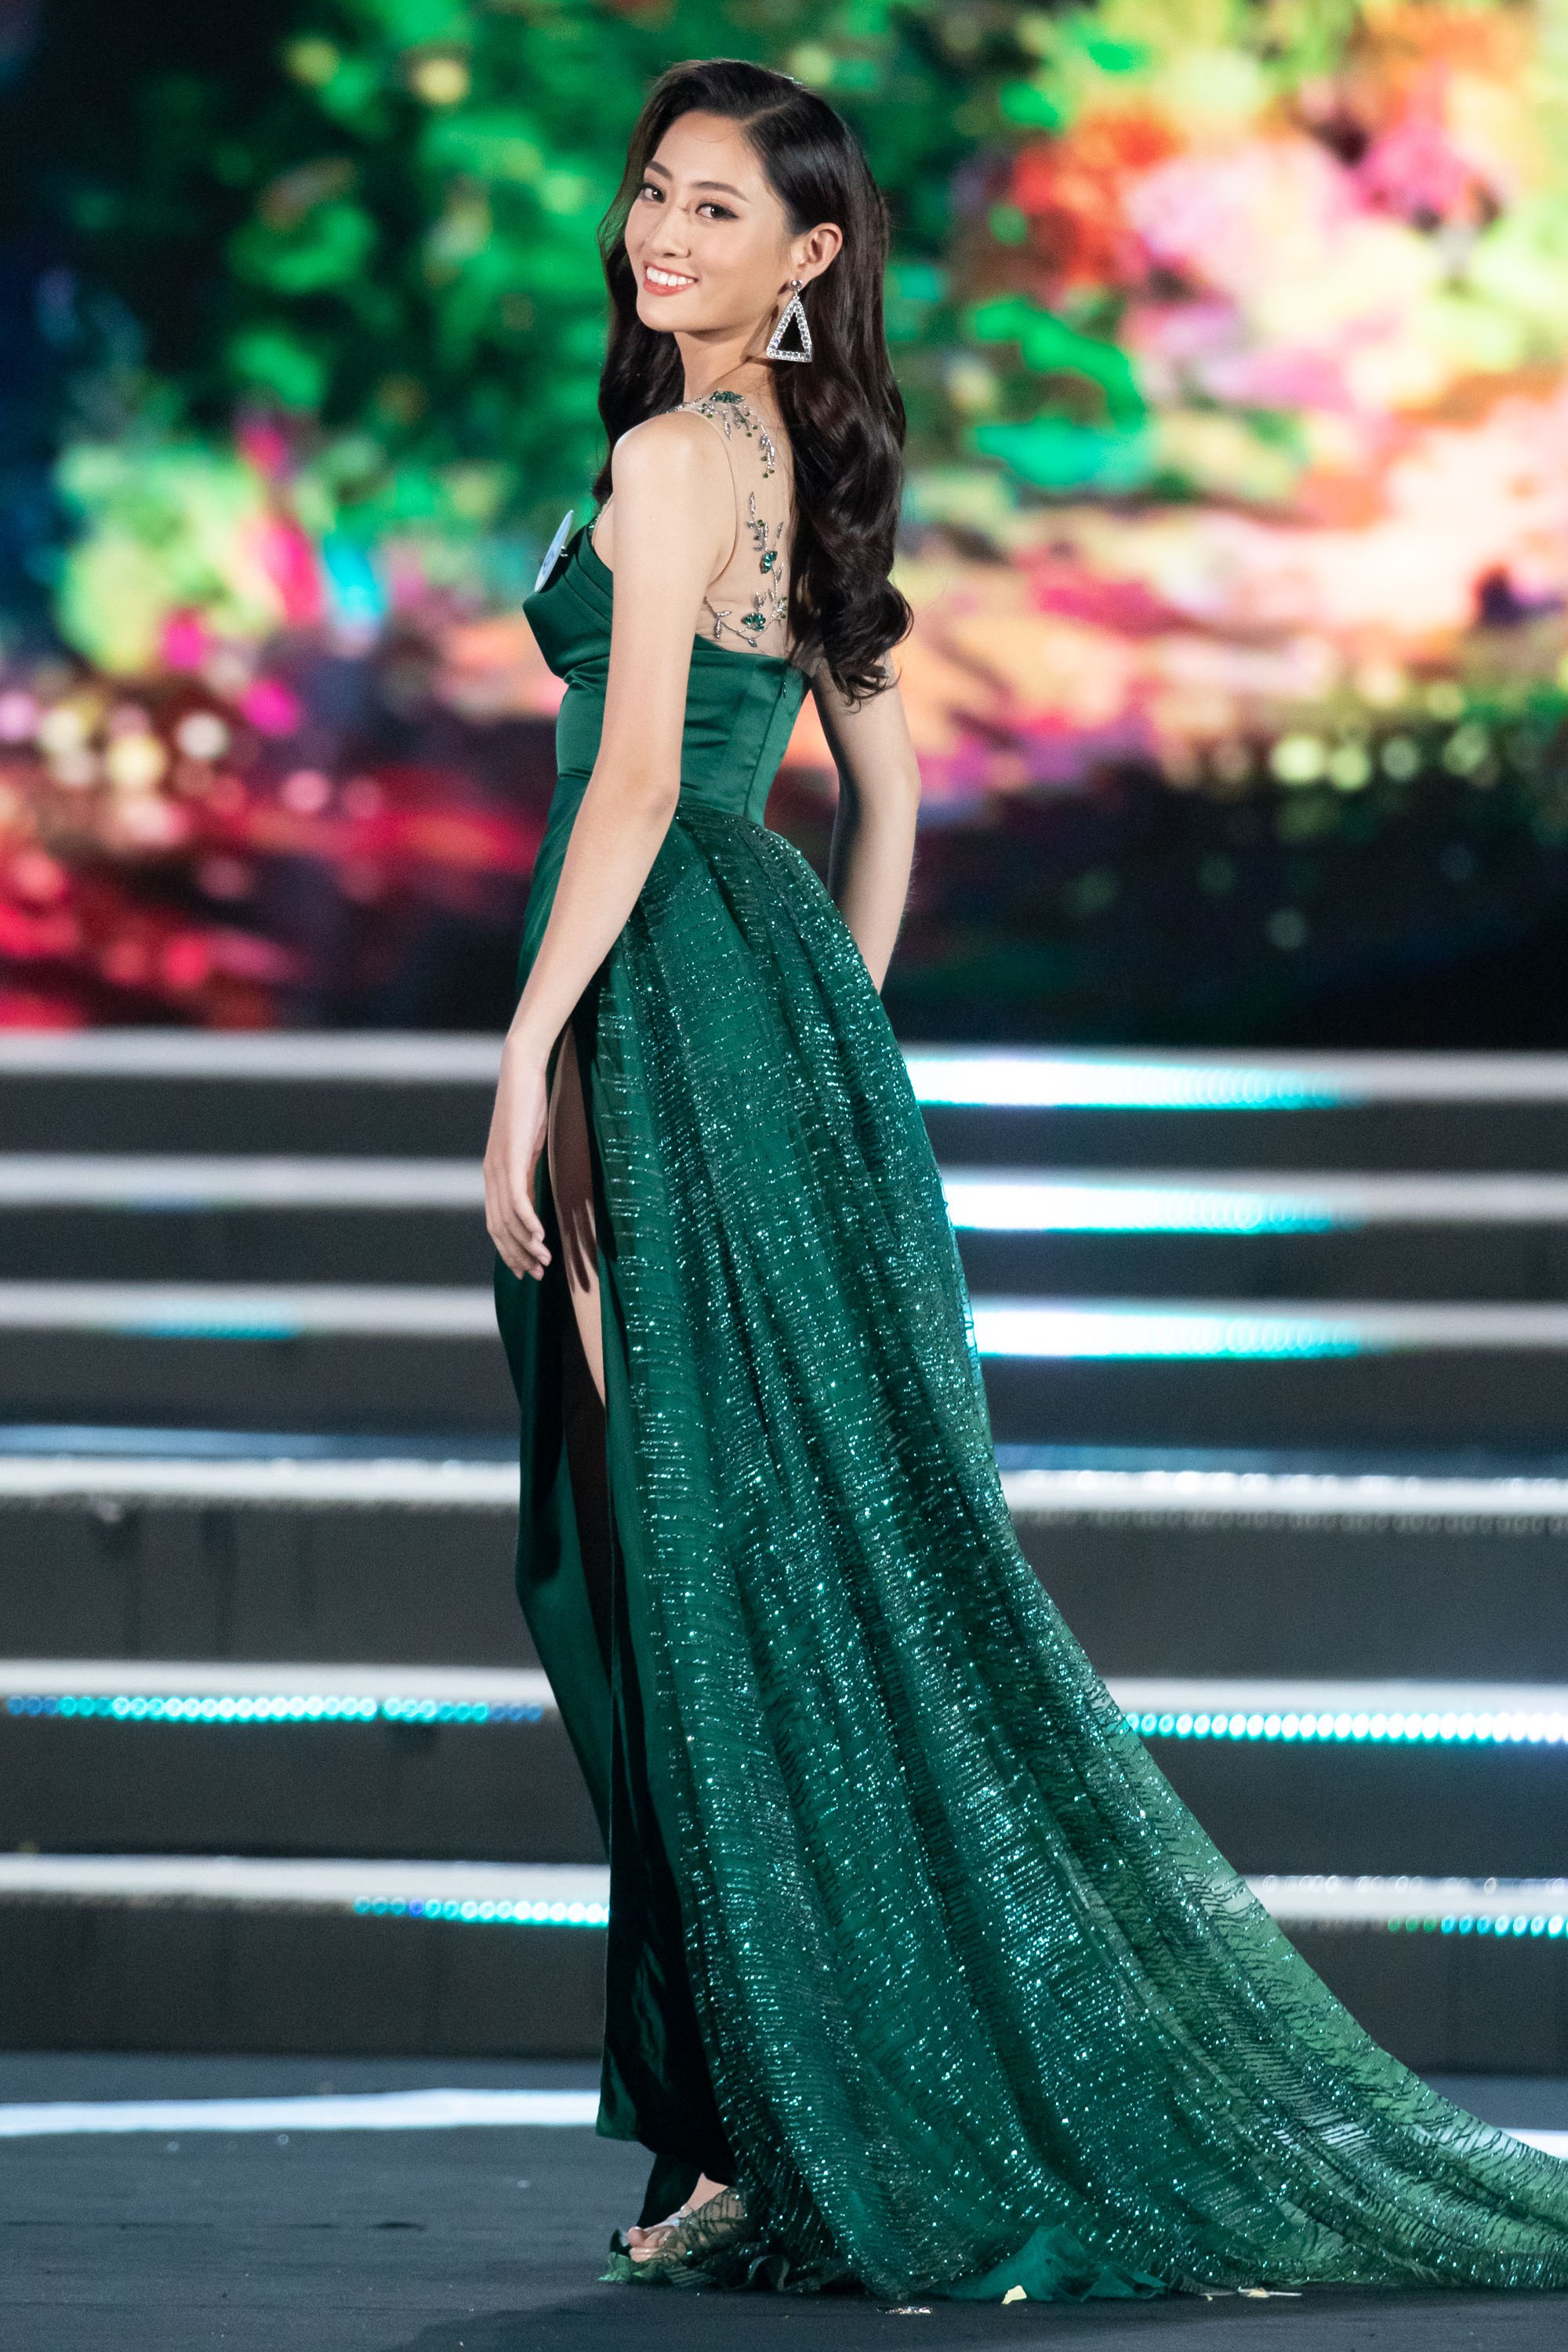 Lương Thùy Linh đăng quang Hoa hậu Thế giới Việt Nam 2019 - Ảnh 4.